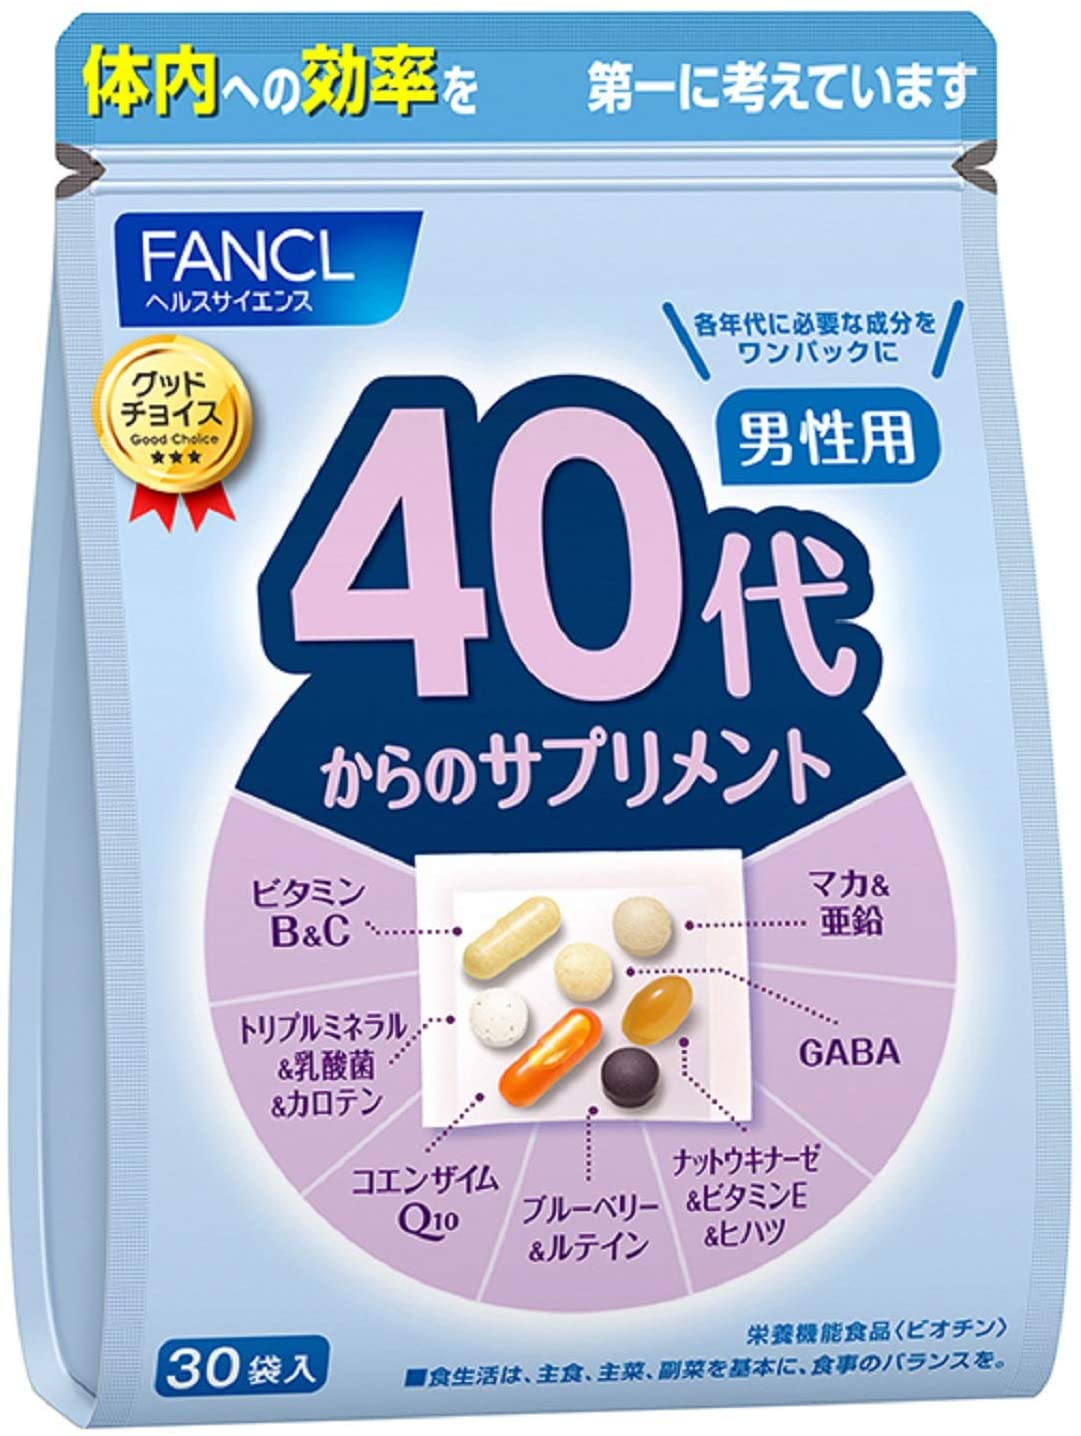 Витаминный комплекс FANCL для мужчин от 40 лет, 30 пакетиков × 7 таблеток